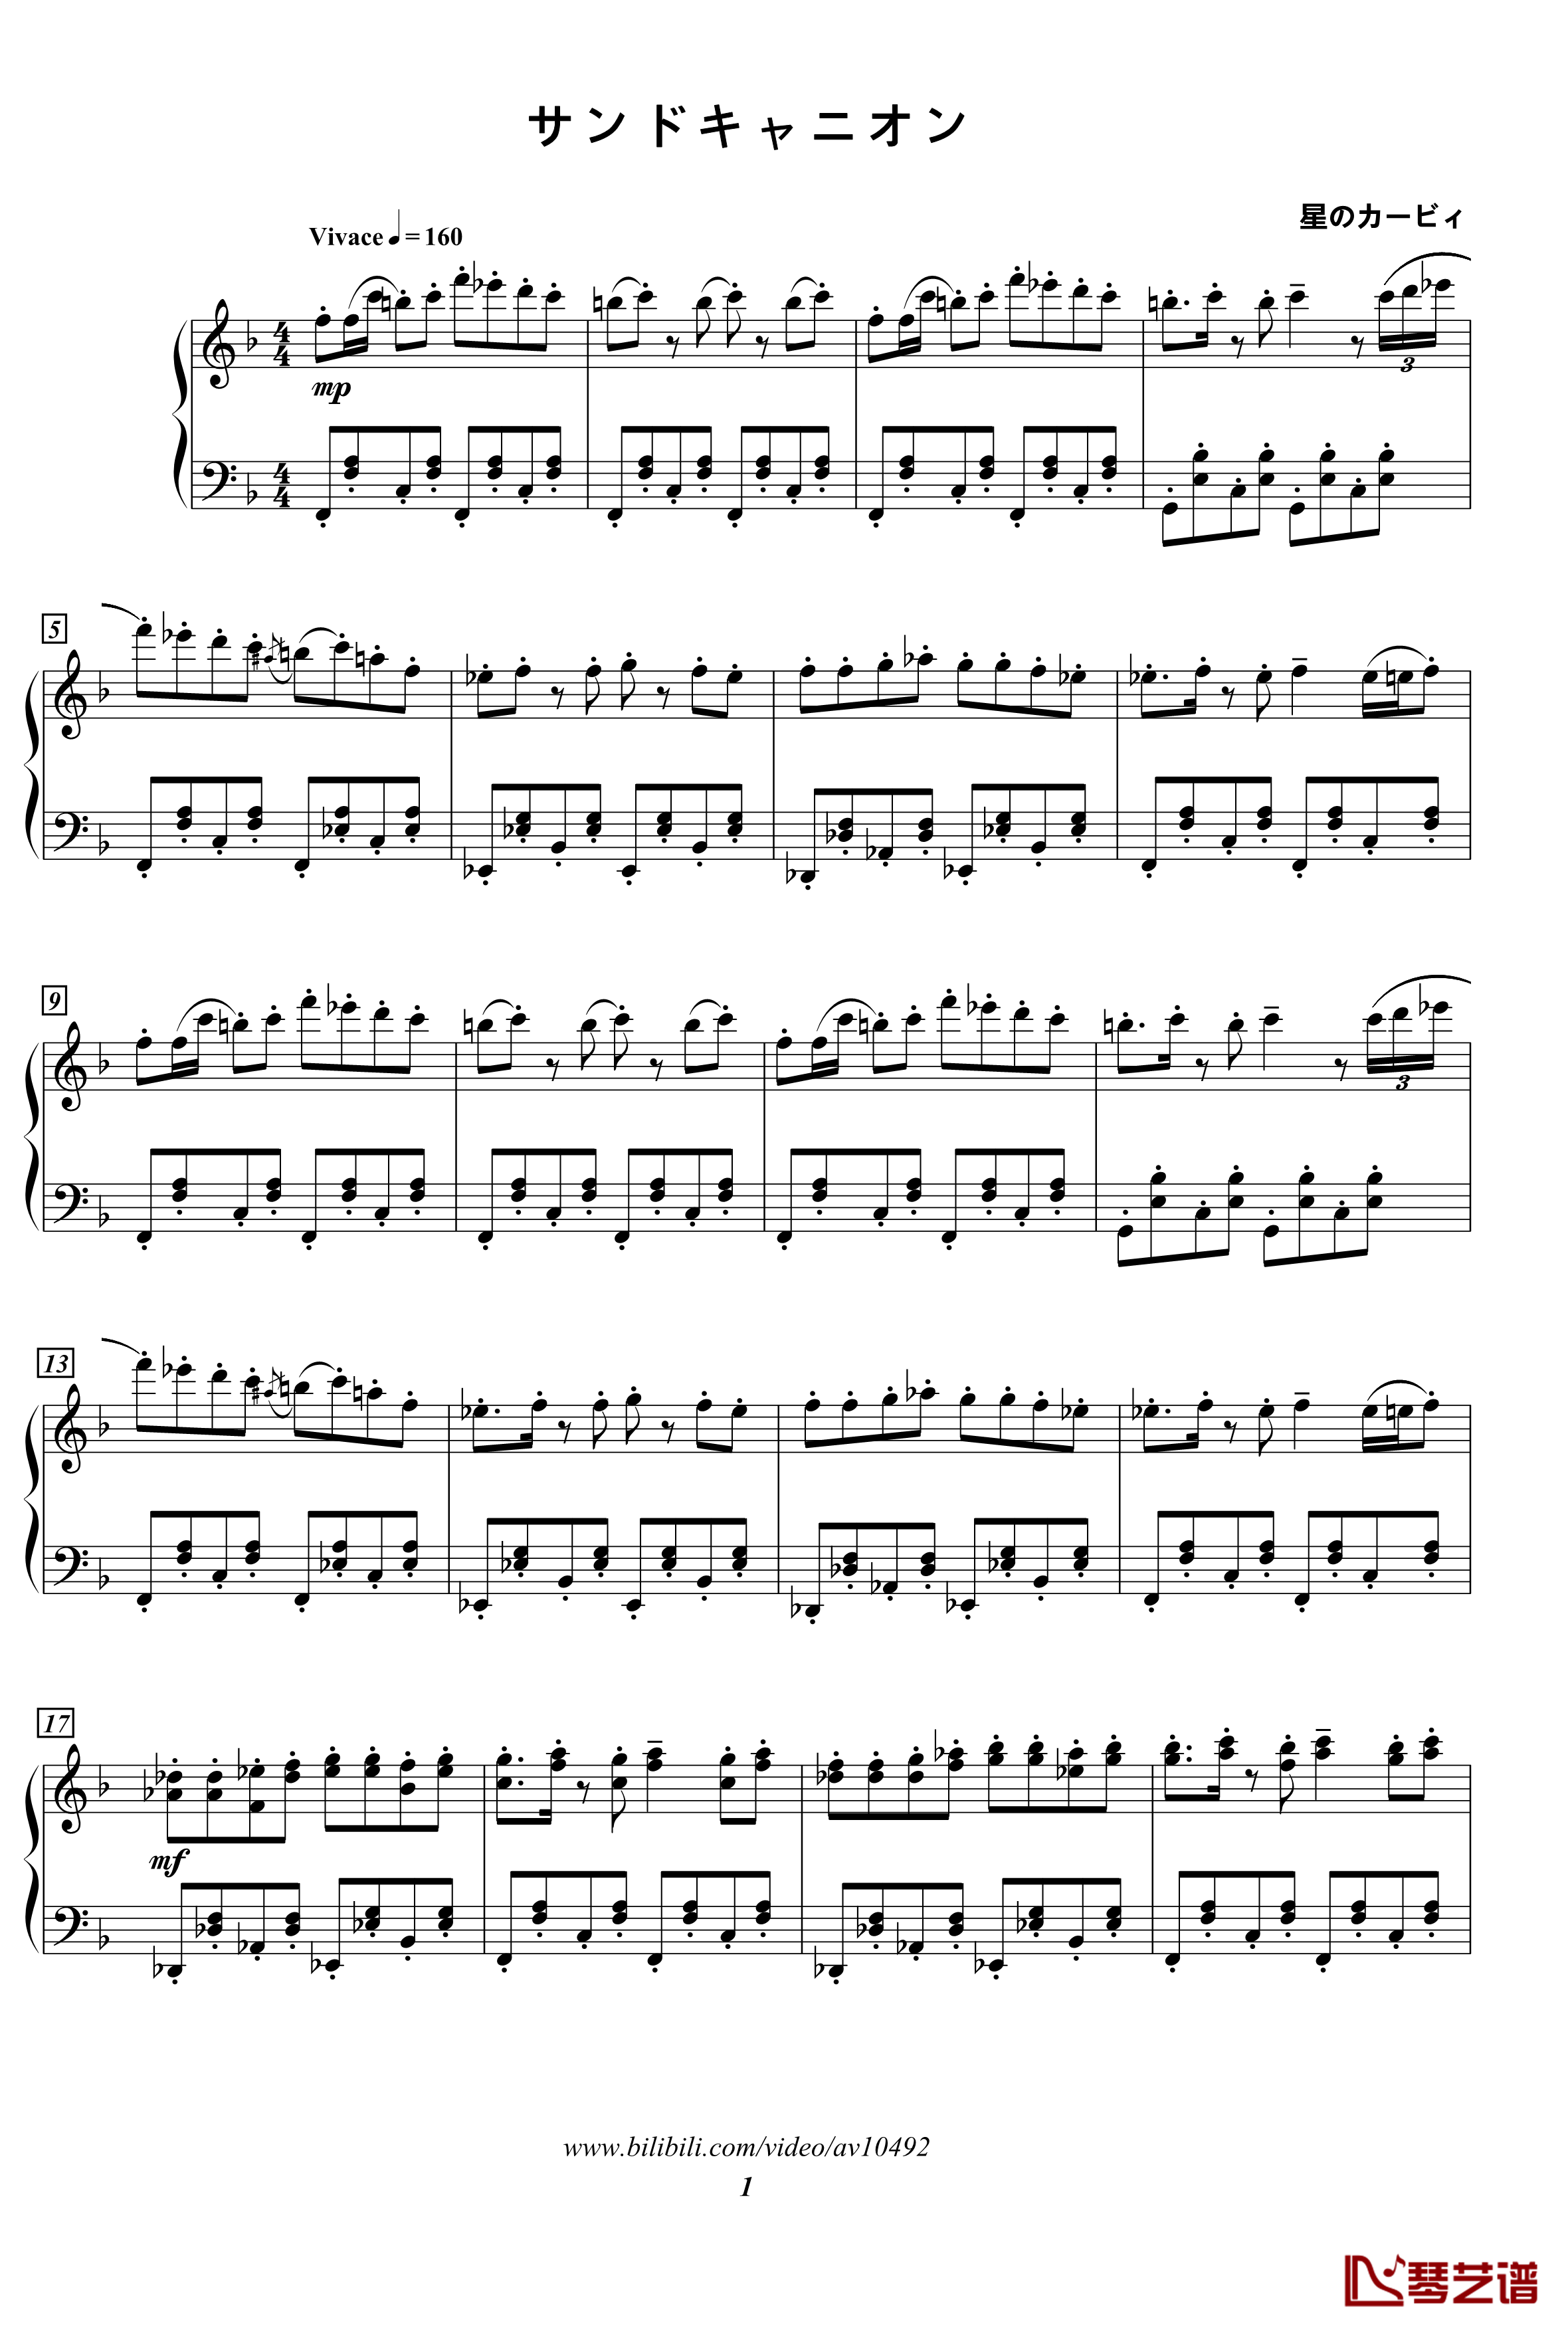 サンドキャニオン钢琴谱-10492BGM-星之卡比1